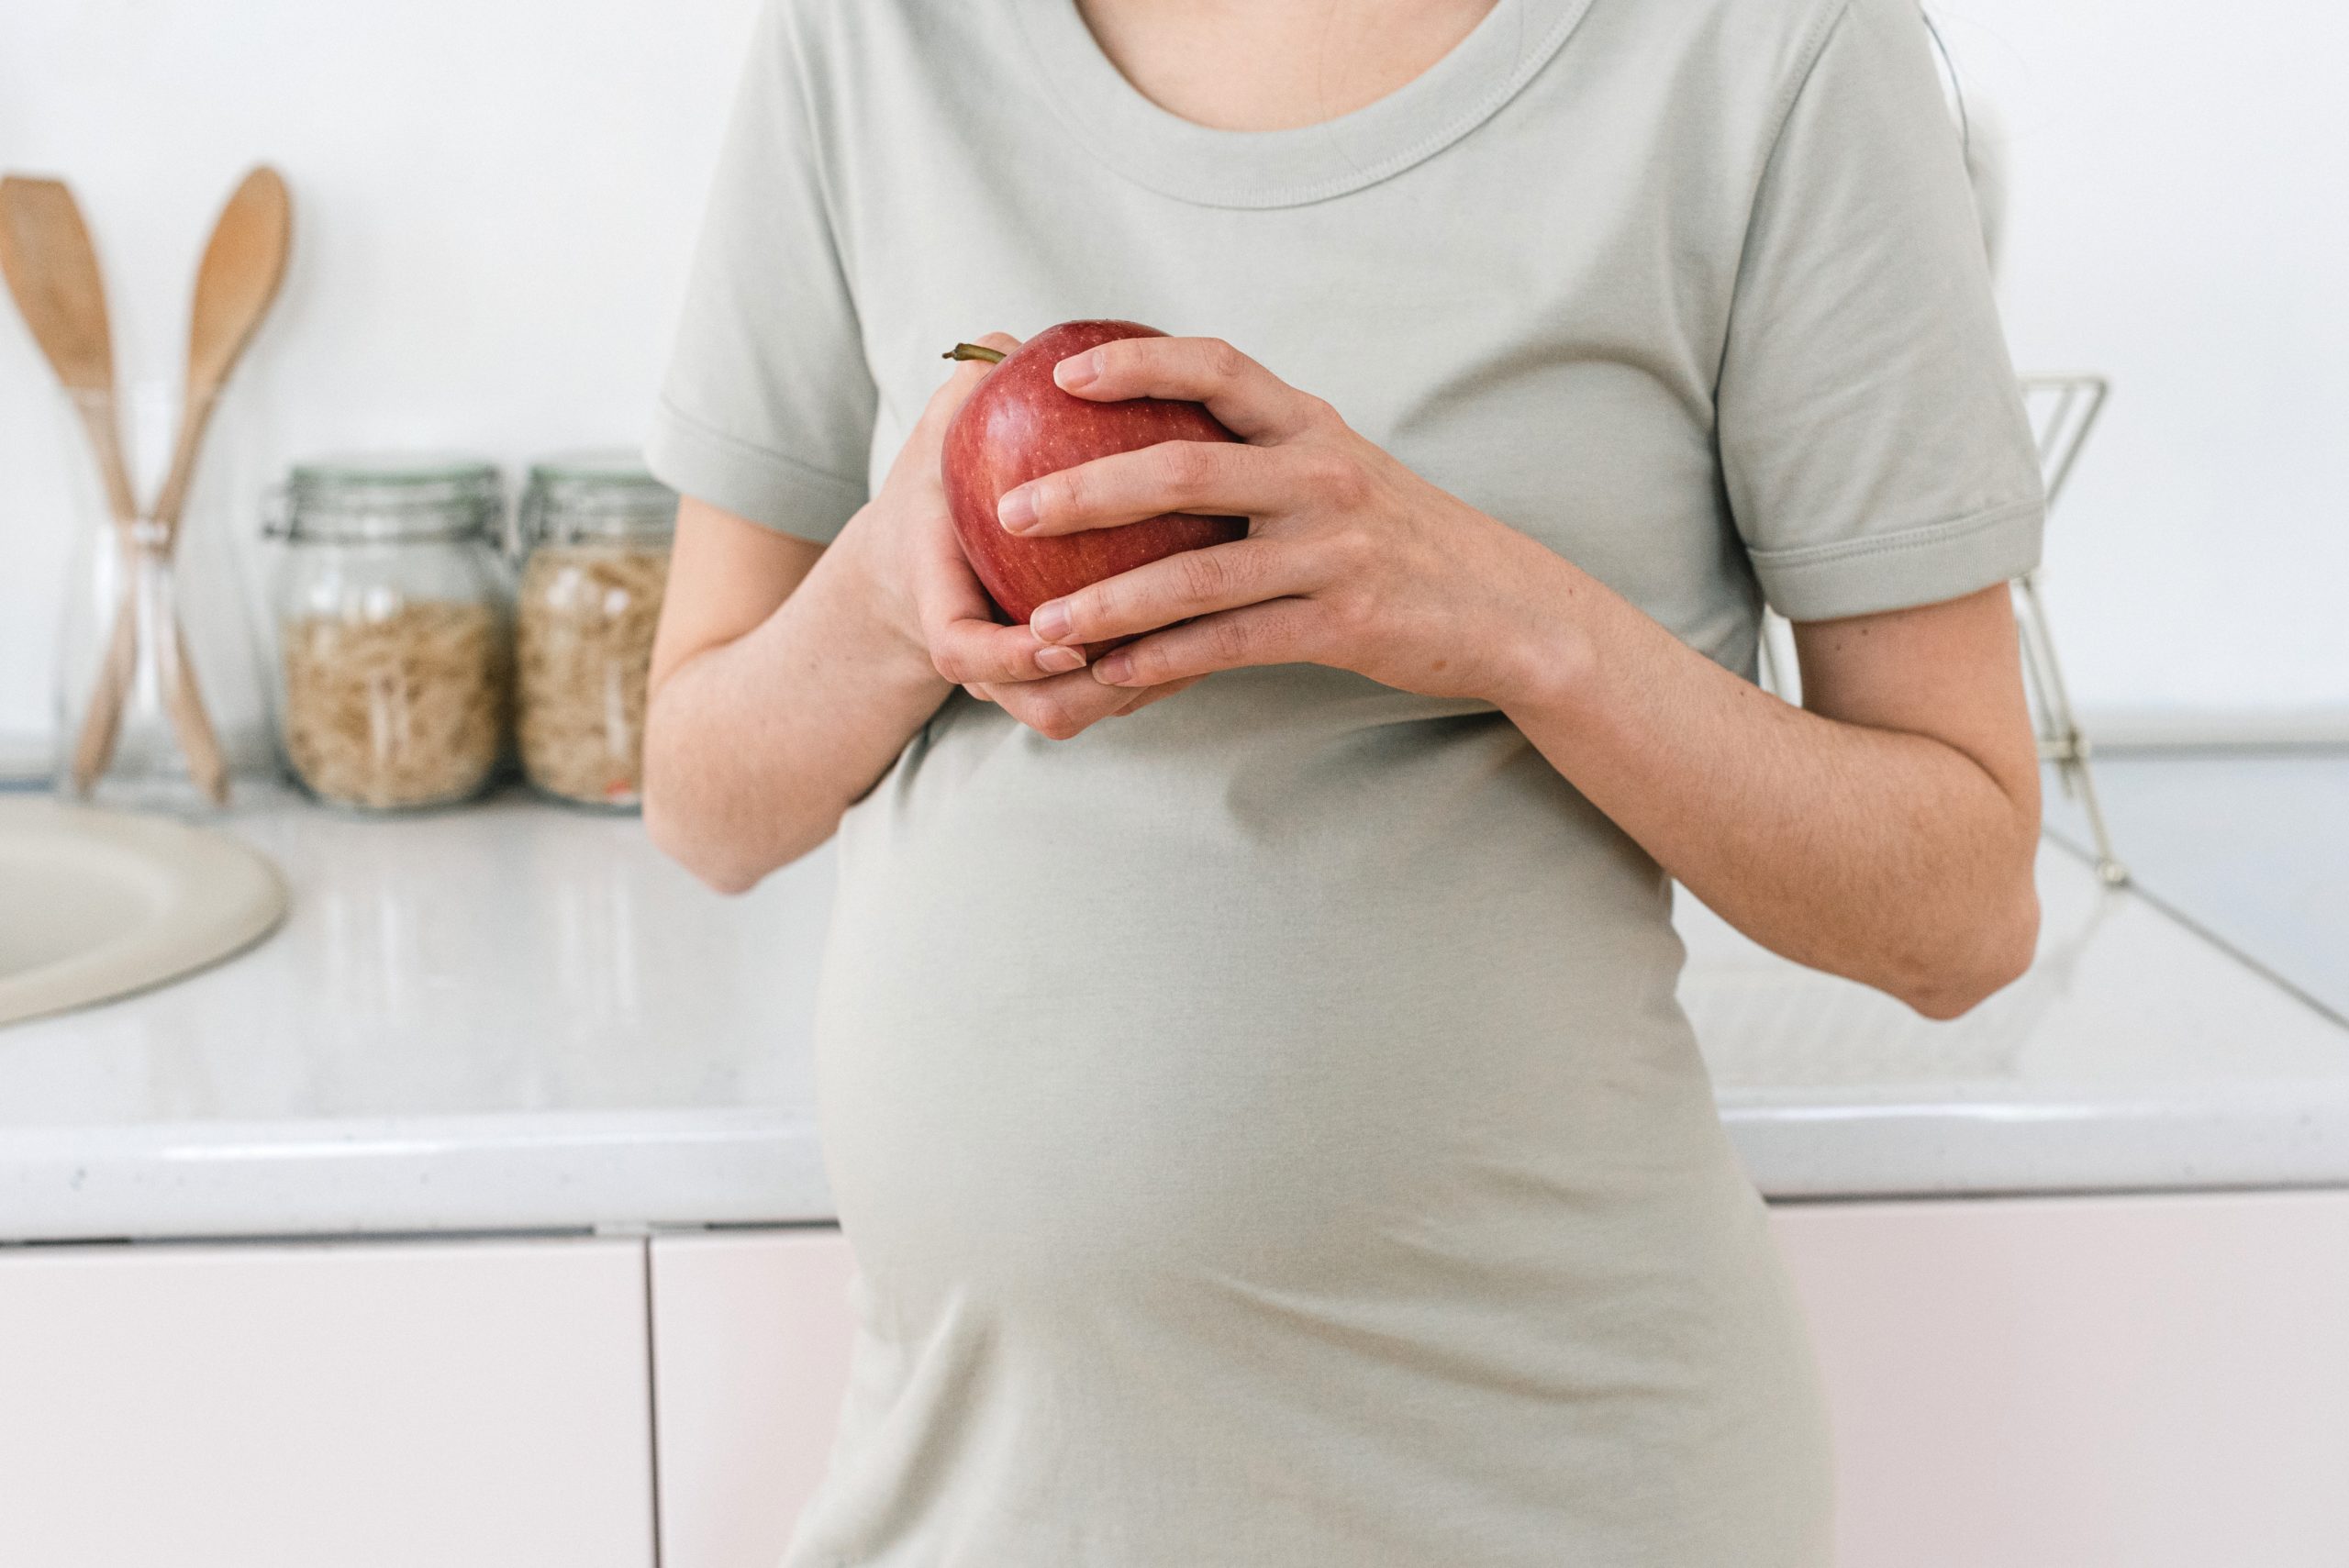 10 preguntas frecuentes sobre la nutrición en el embarazo